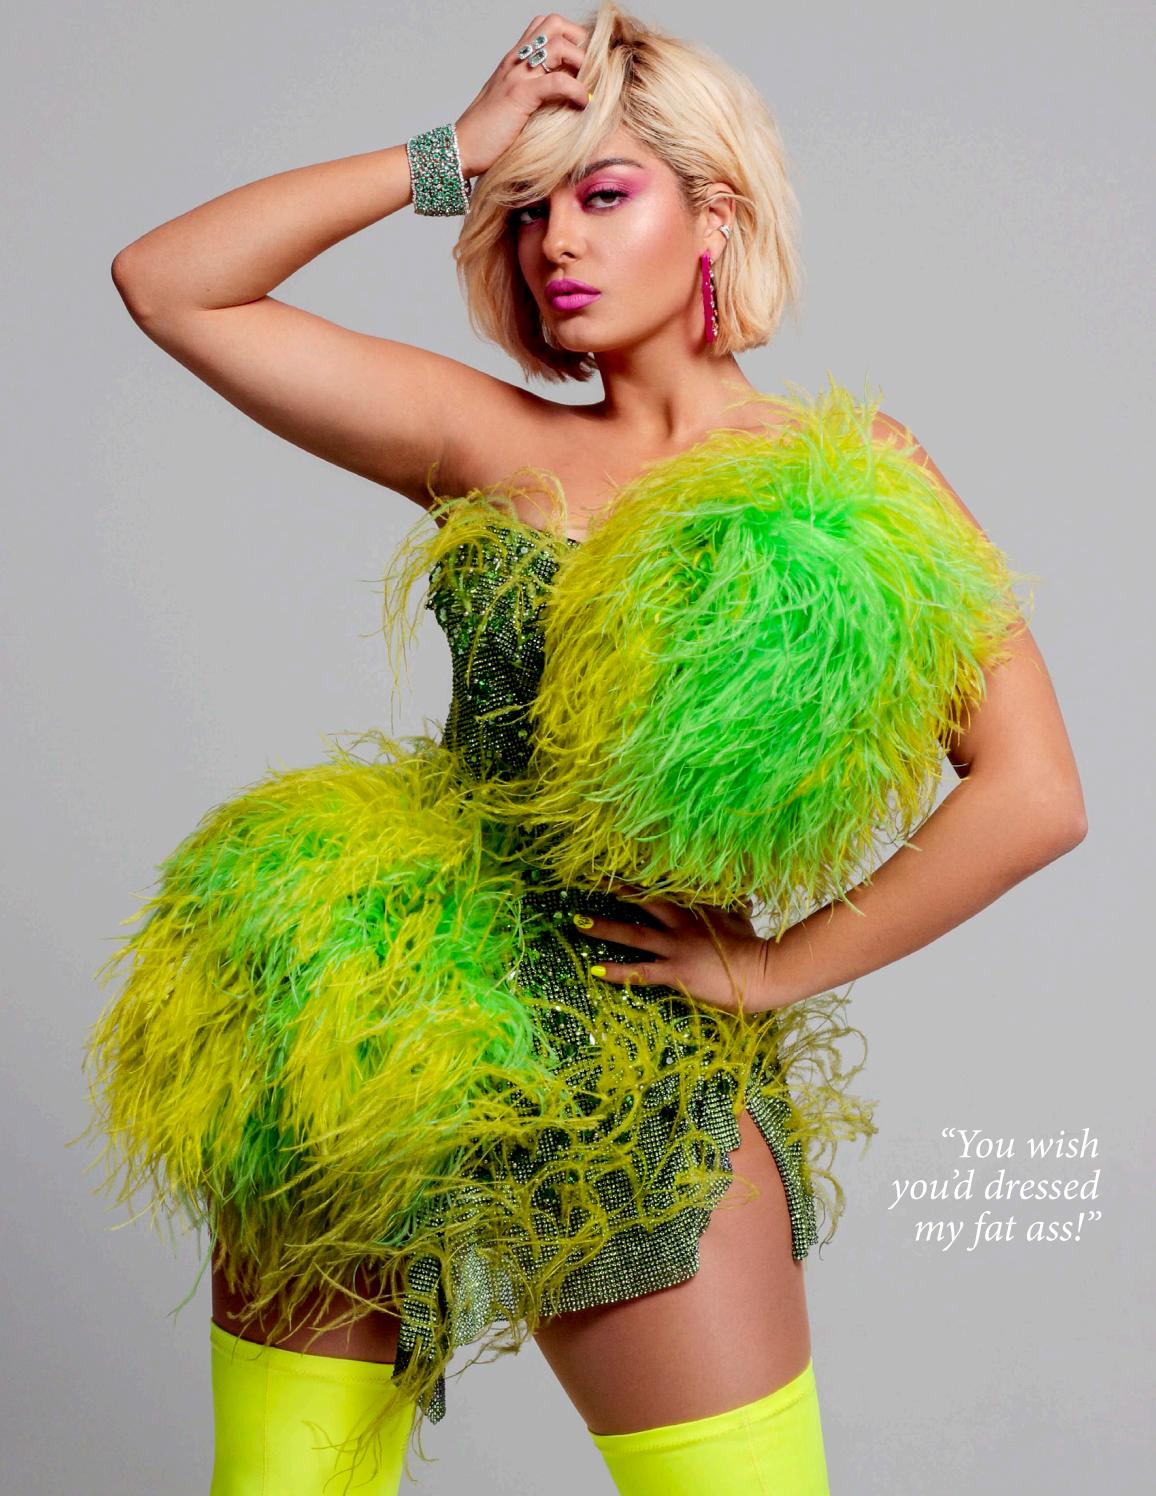 Bebe Rexha â€“ Voir Fashion Issue 24 (Summer 2019)